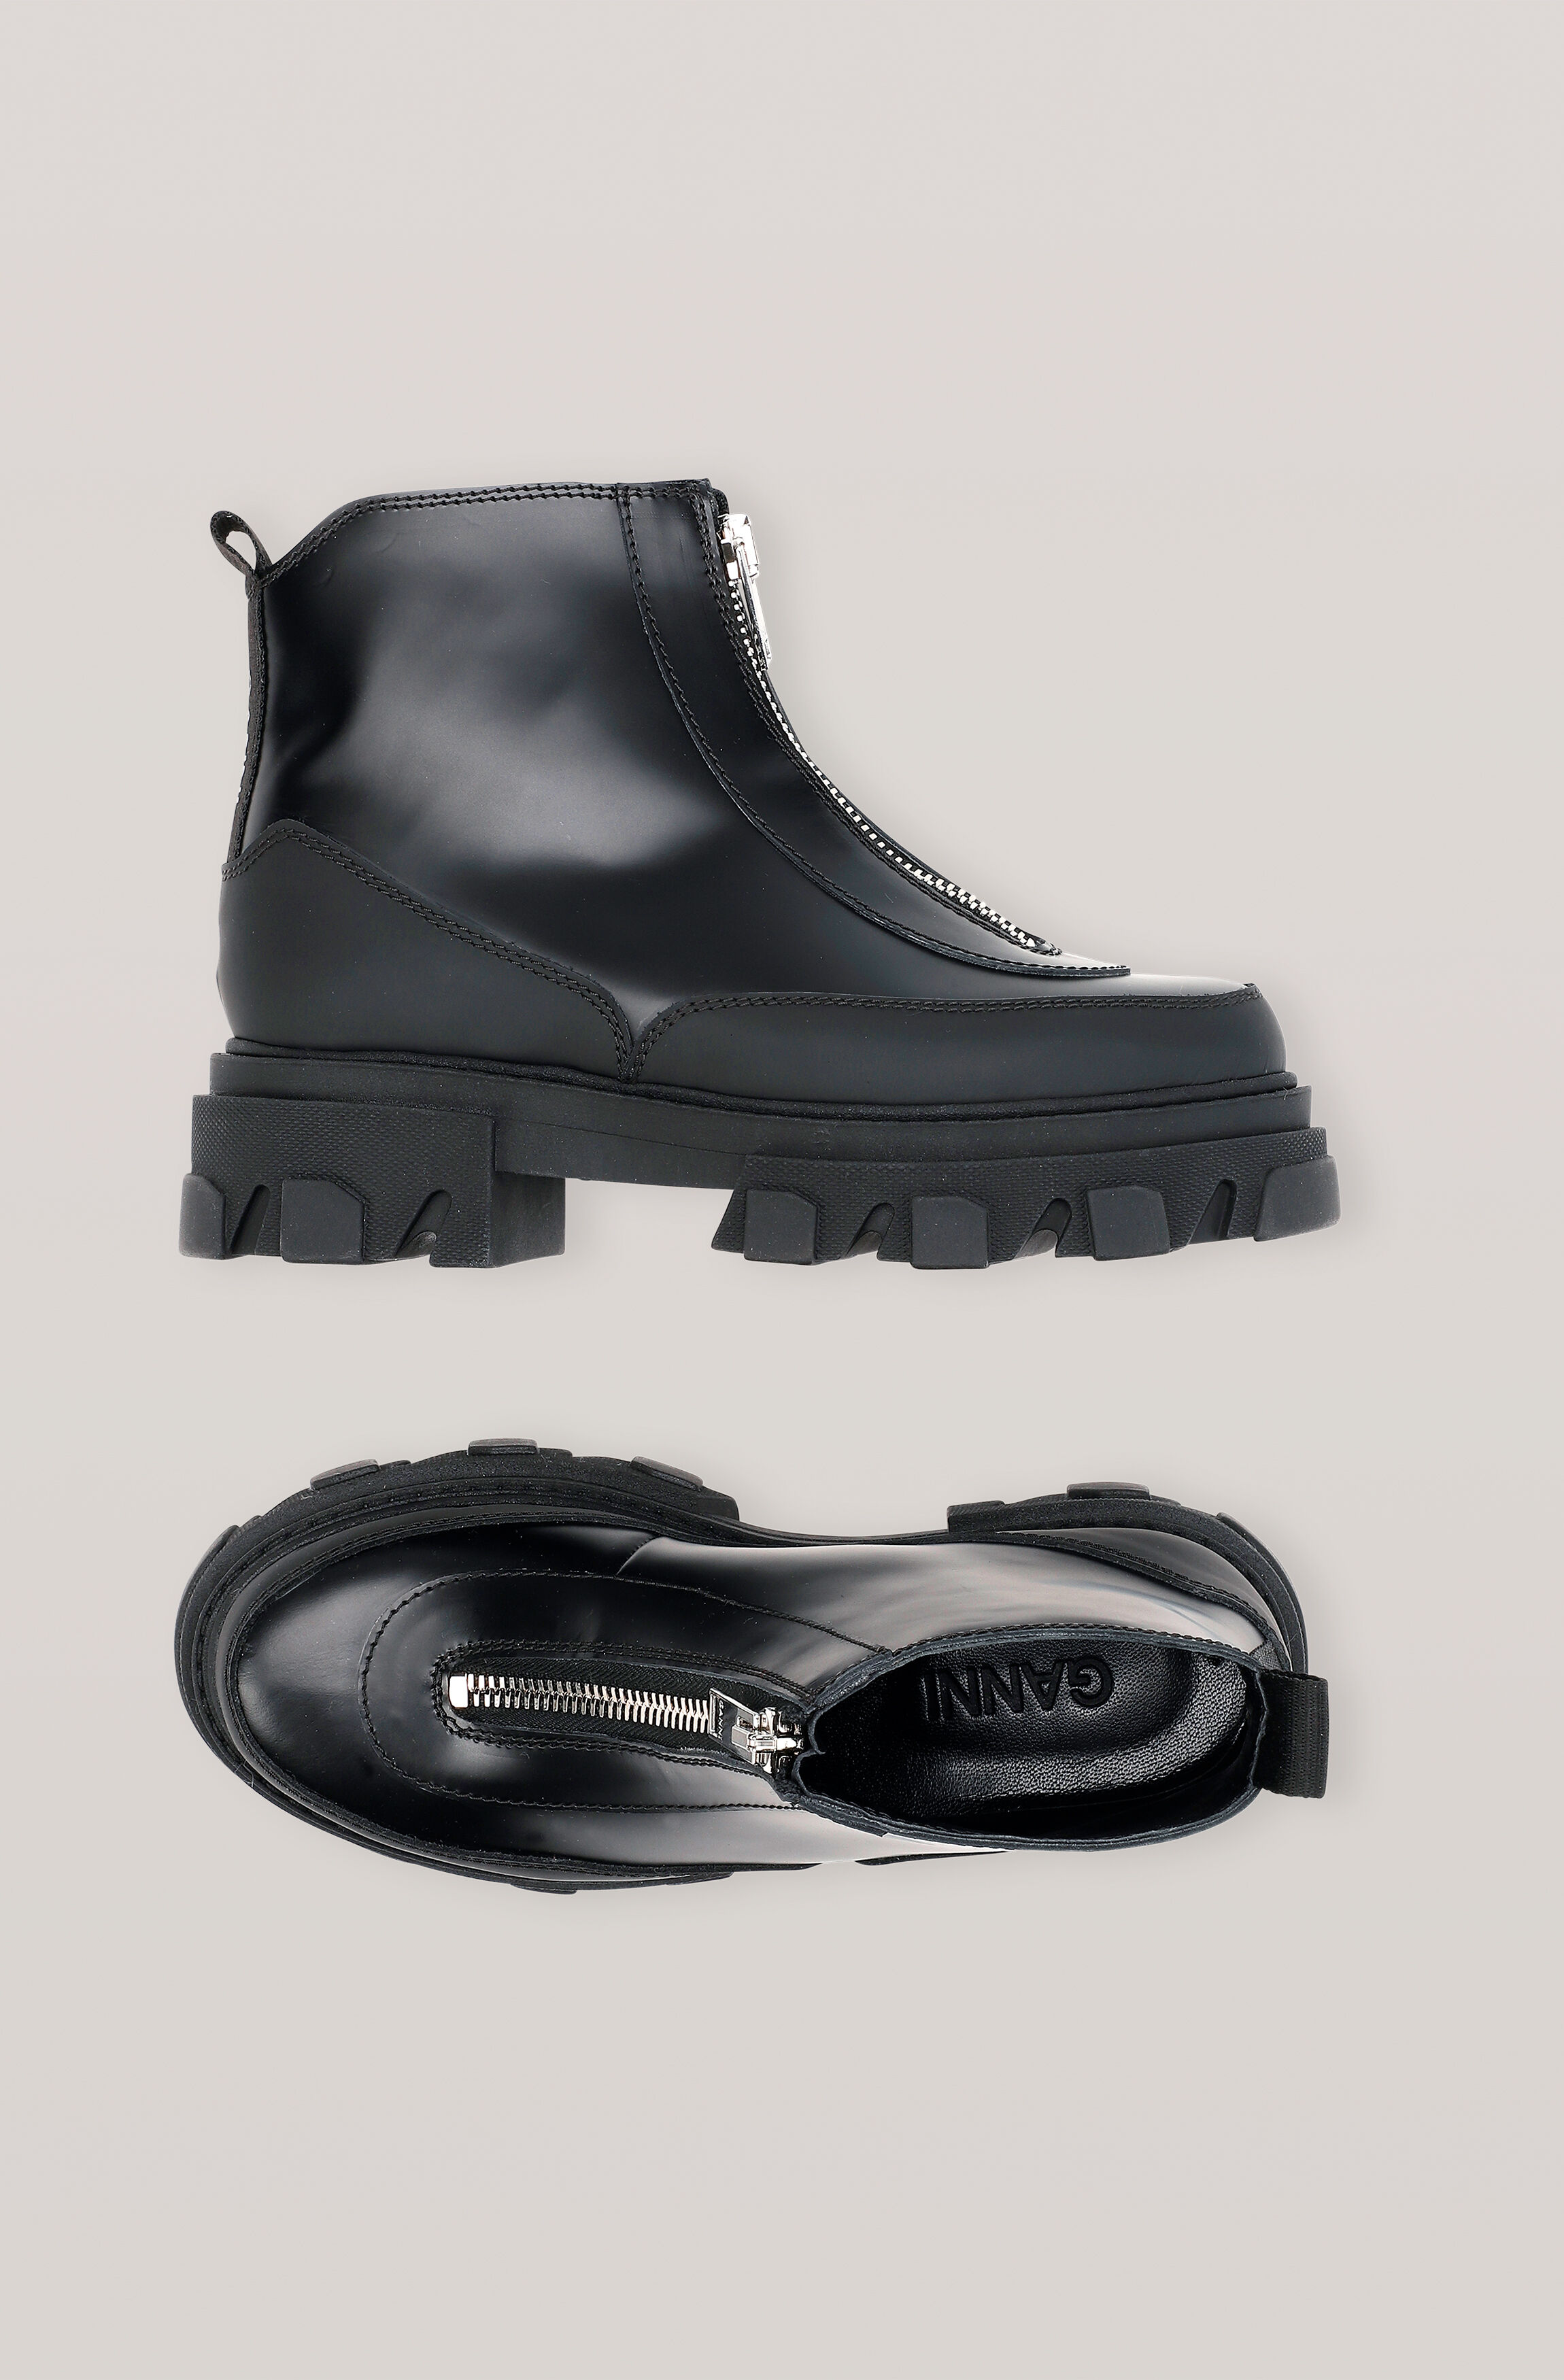 zip up rain boots